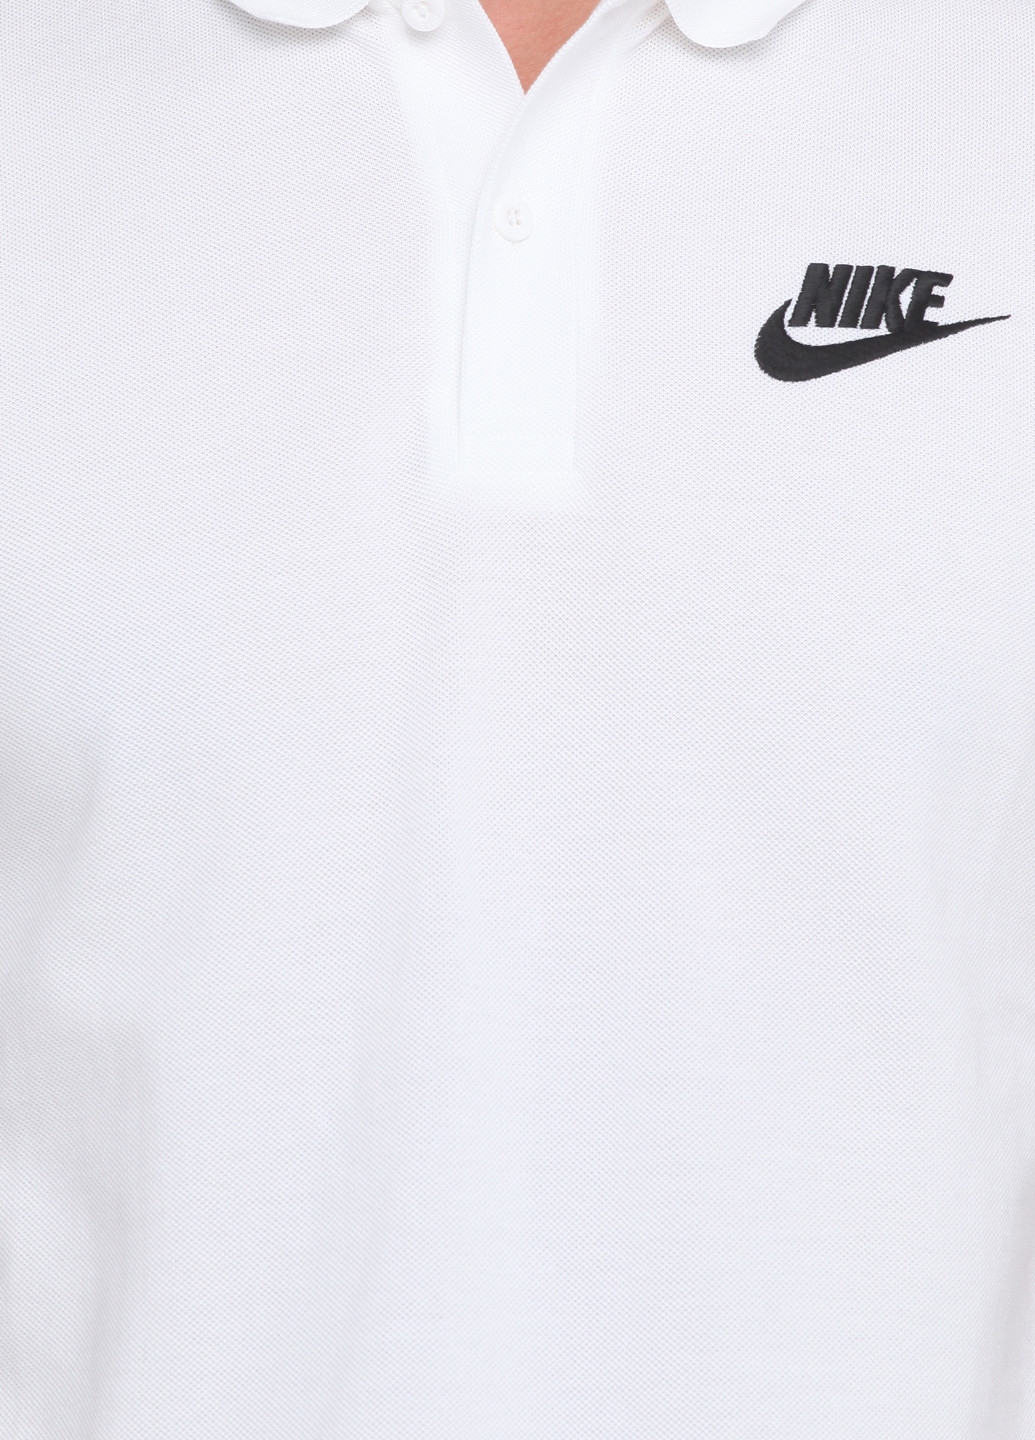 Белая футболка-поло для мужчин Nike с логотипом